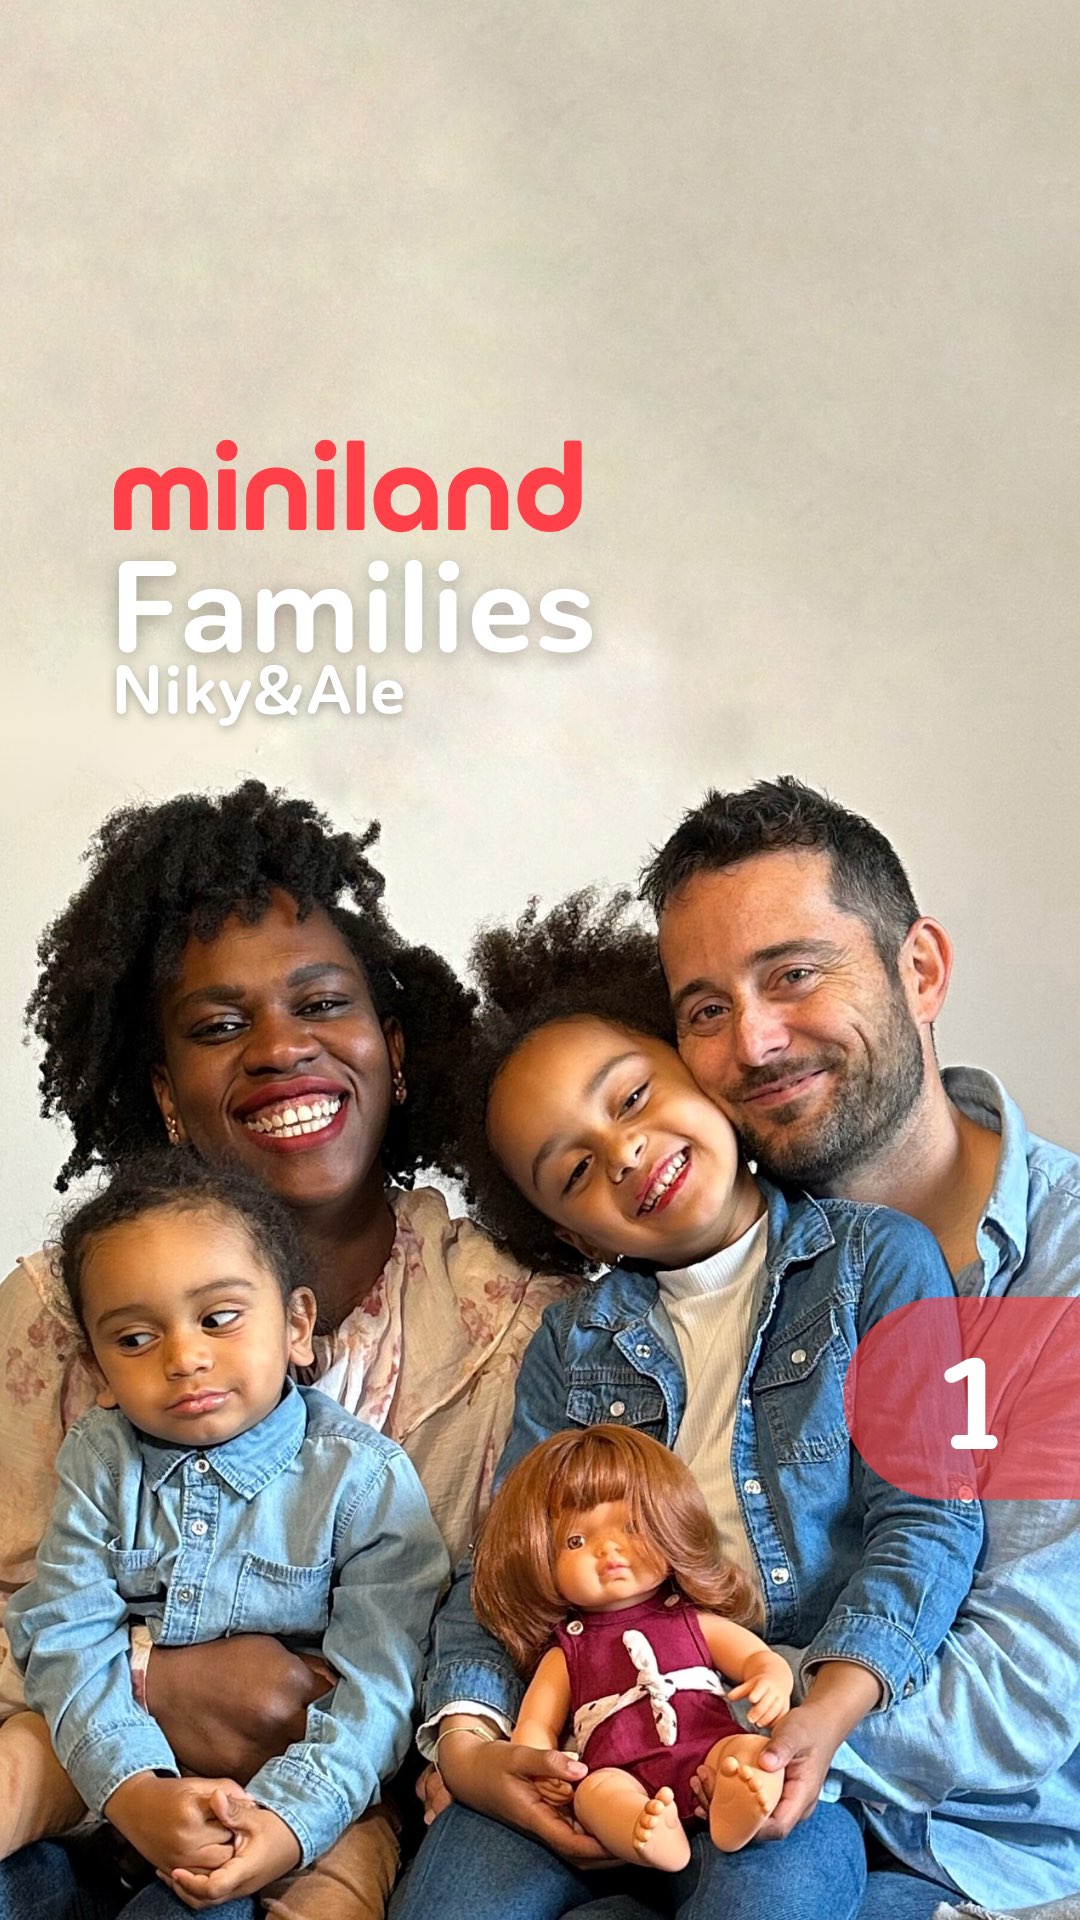 Uno dei video girati per Miniland che ritrae una delle famiglie intervistate per raccontare la propria esperienza